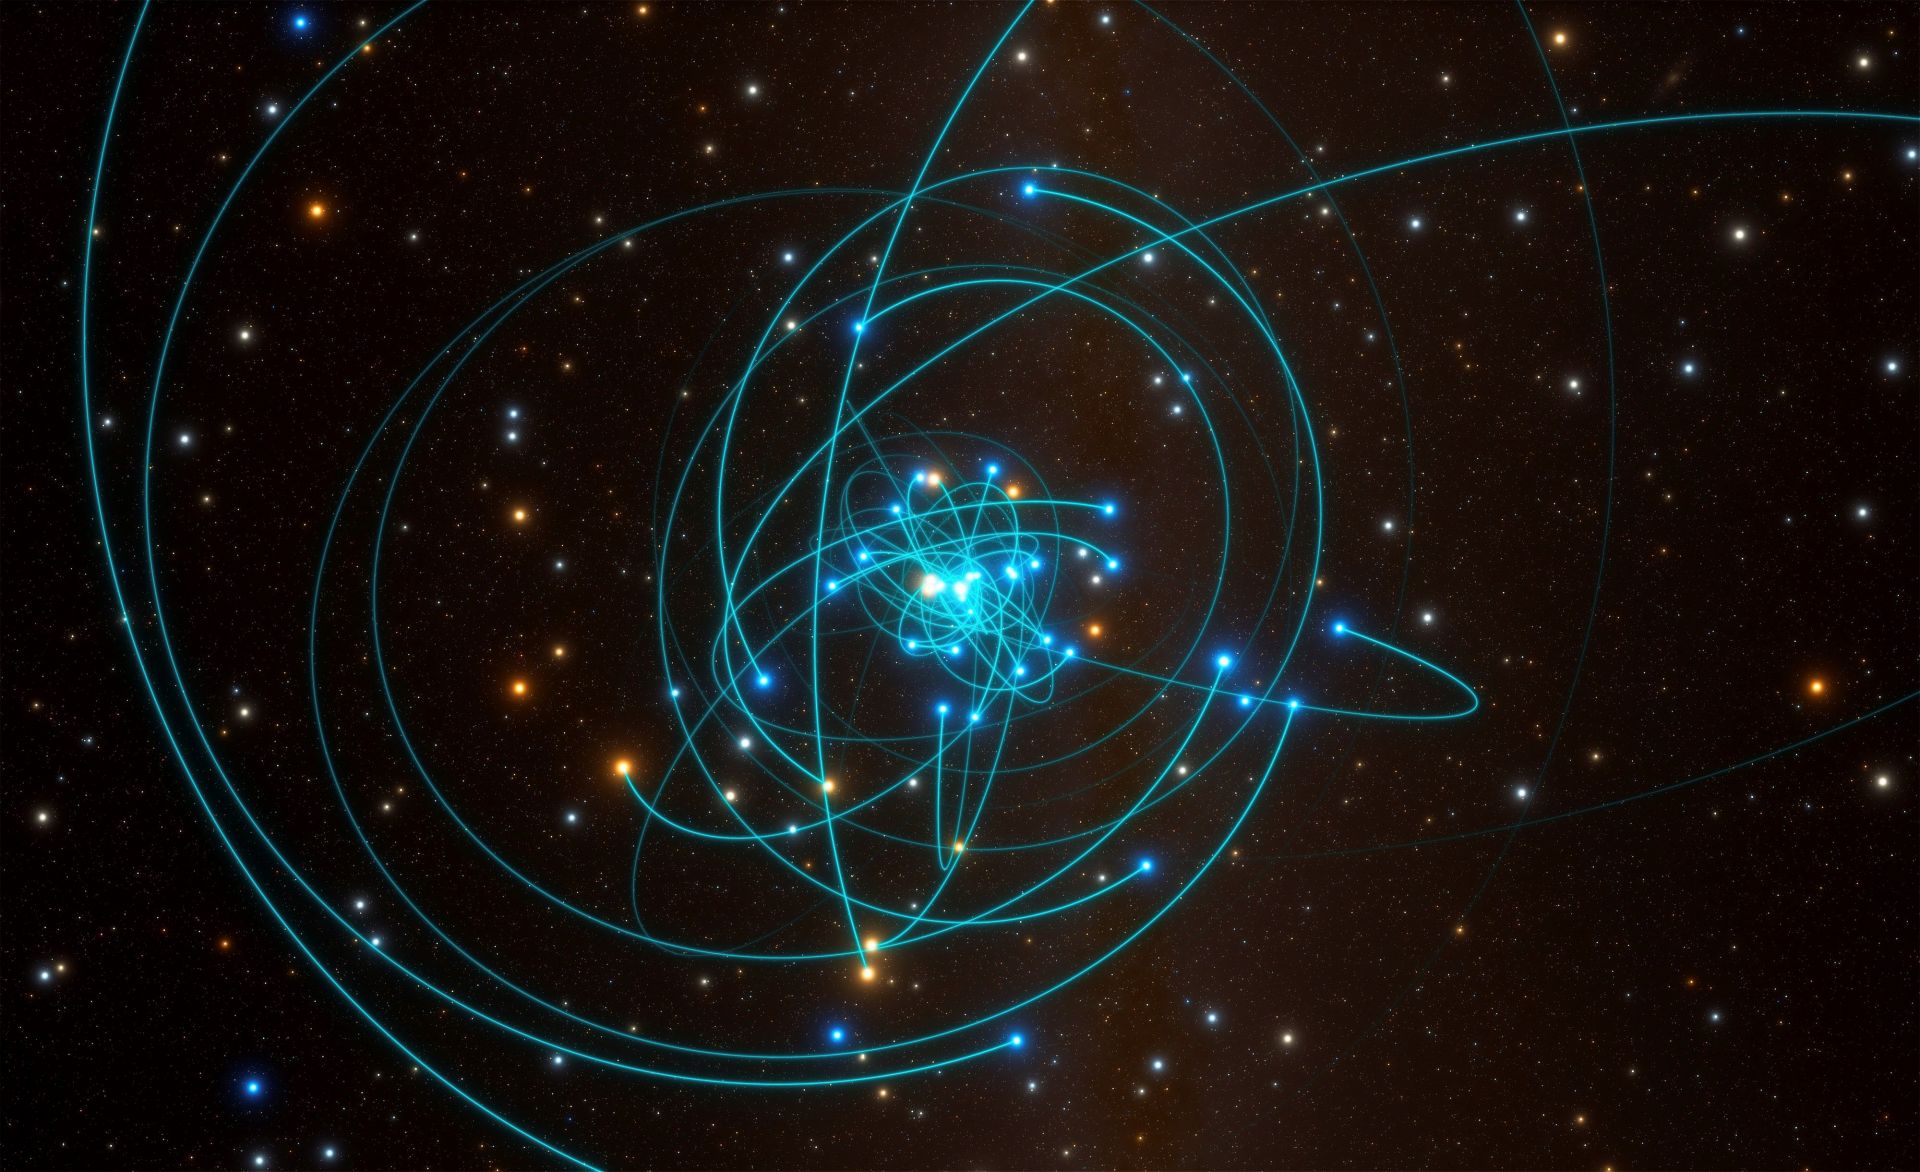 Fotografía facilitada por European Southern Observatory.- Esta simulación muestra las órbitas de las estrellas muy cerca del agujero negro supermasivo en el centro de la Vía Láctea.